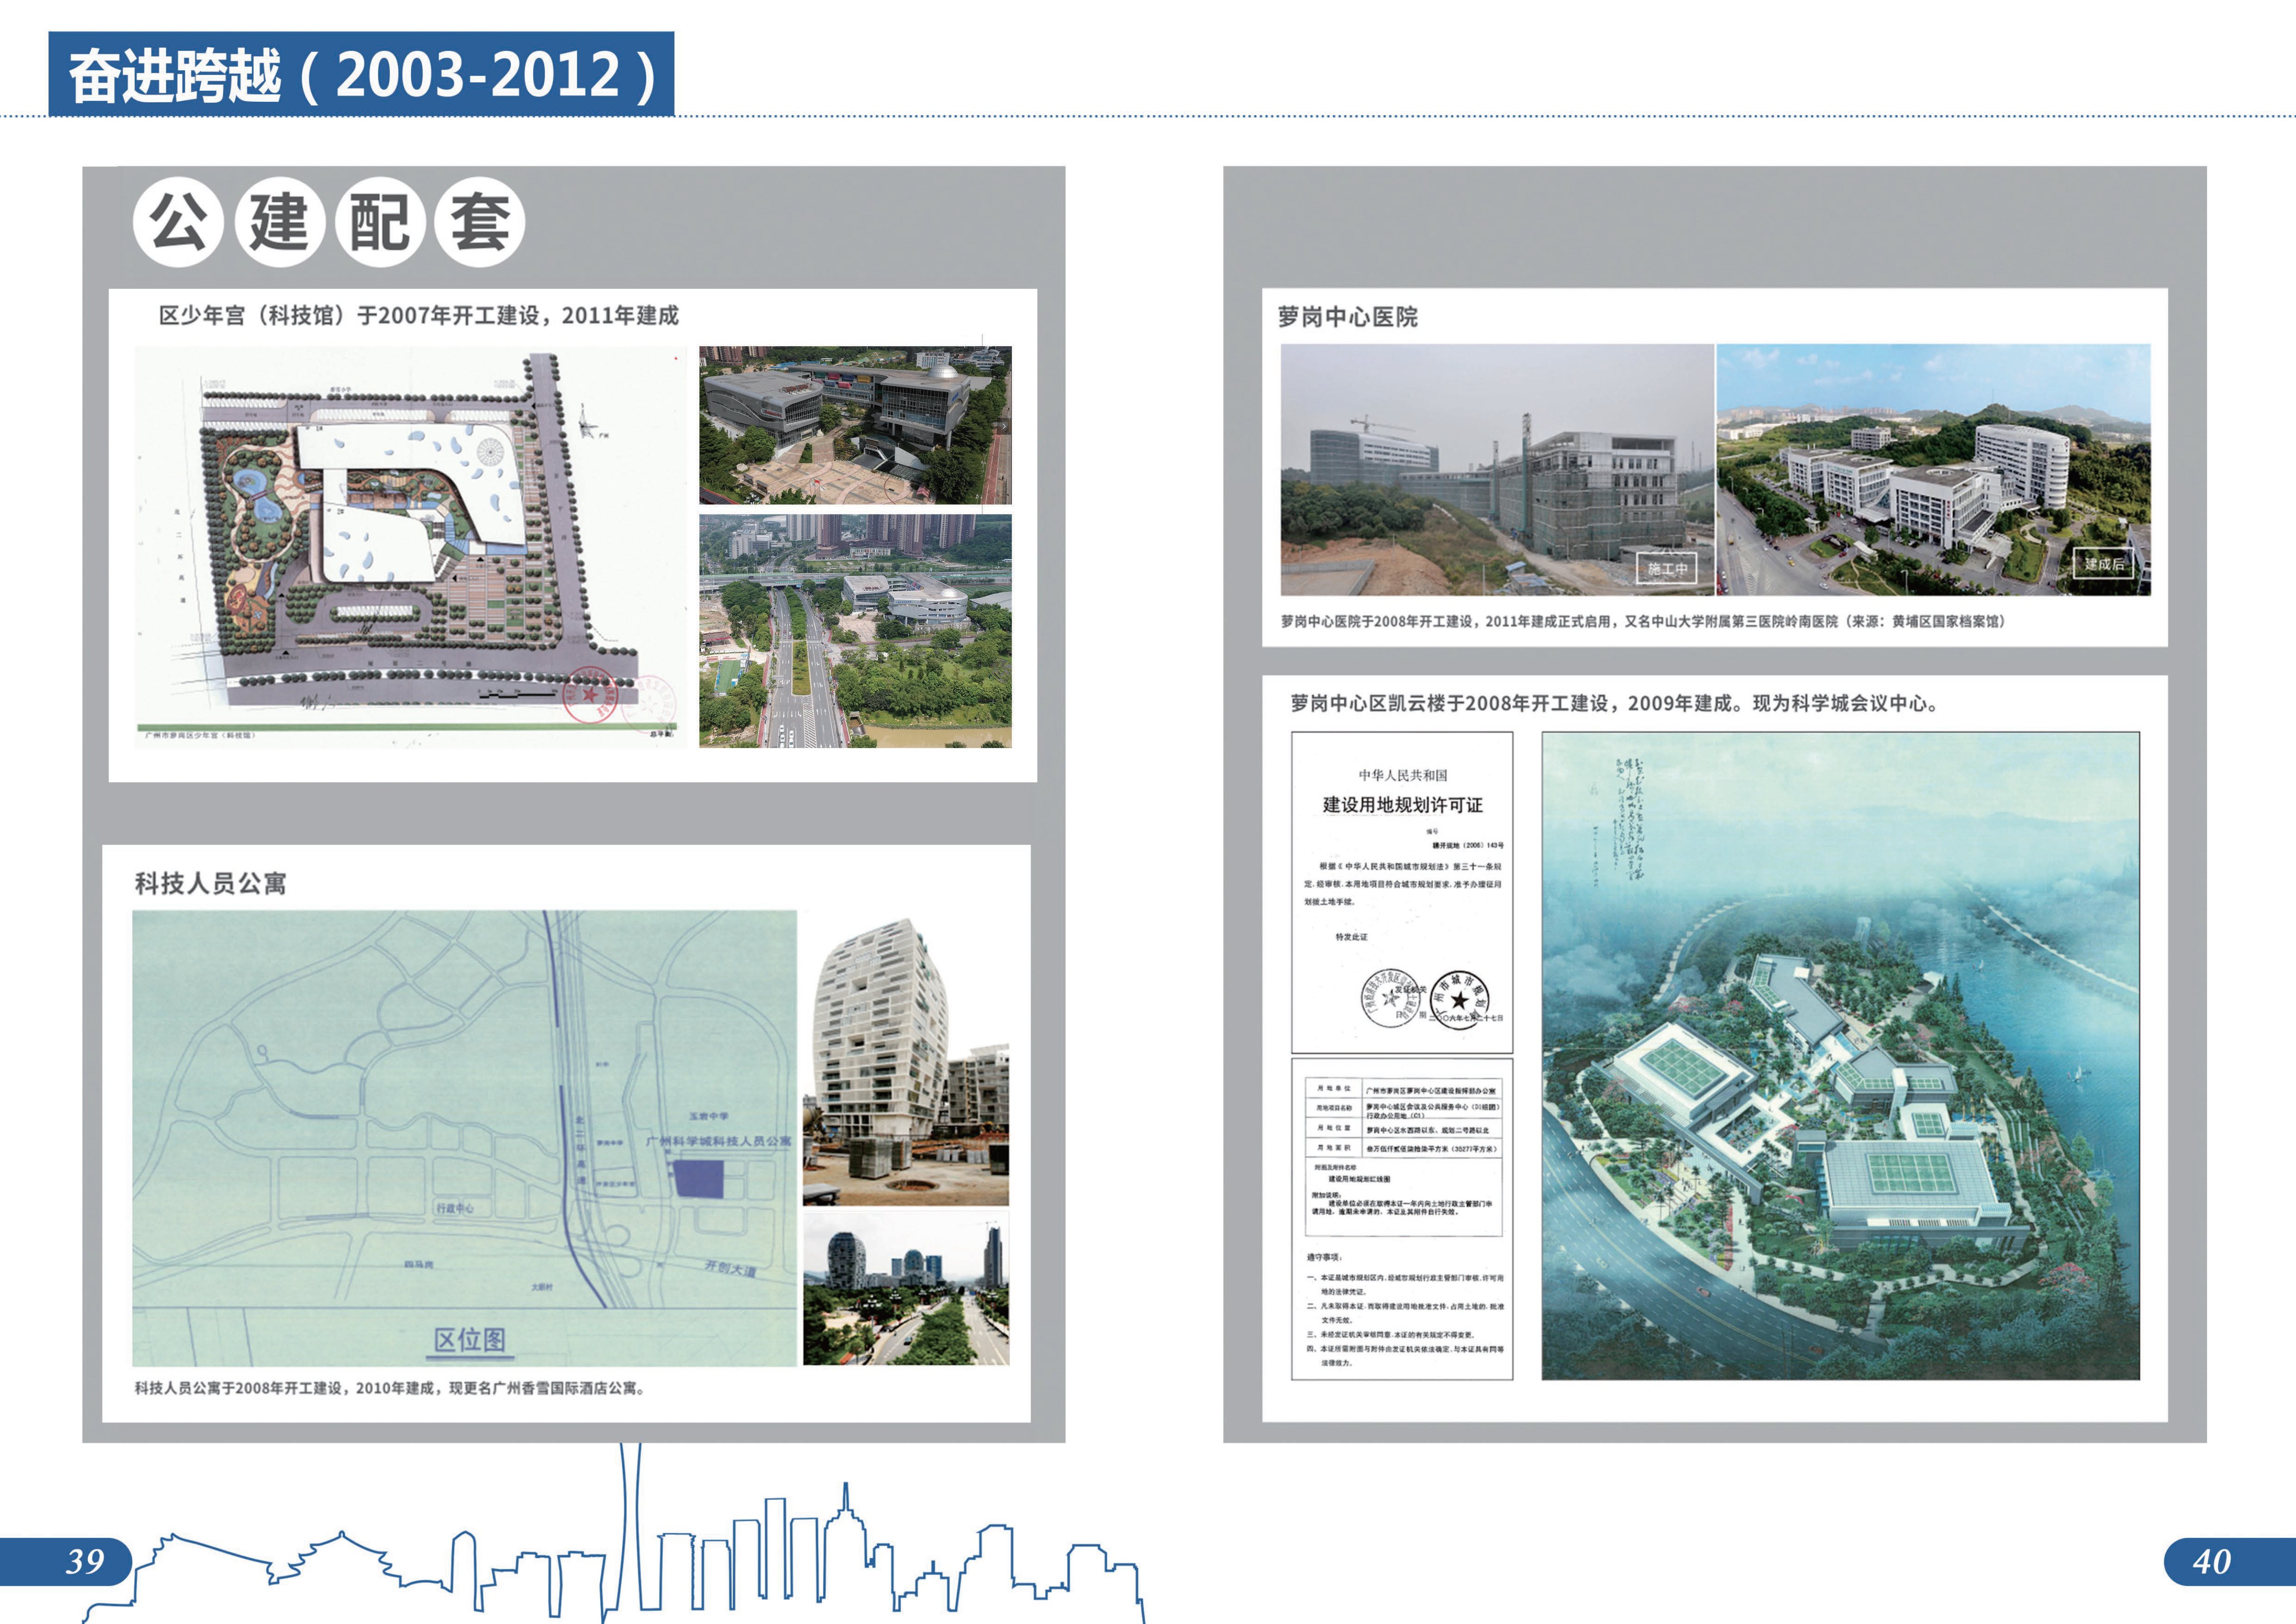 城市建设档案图片展图册成品20230807-22.jpg